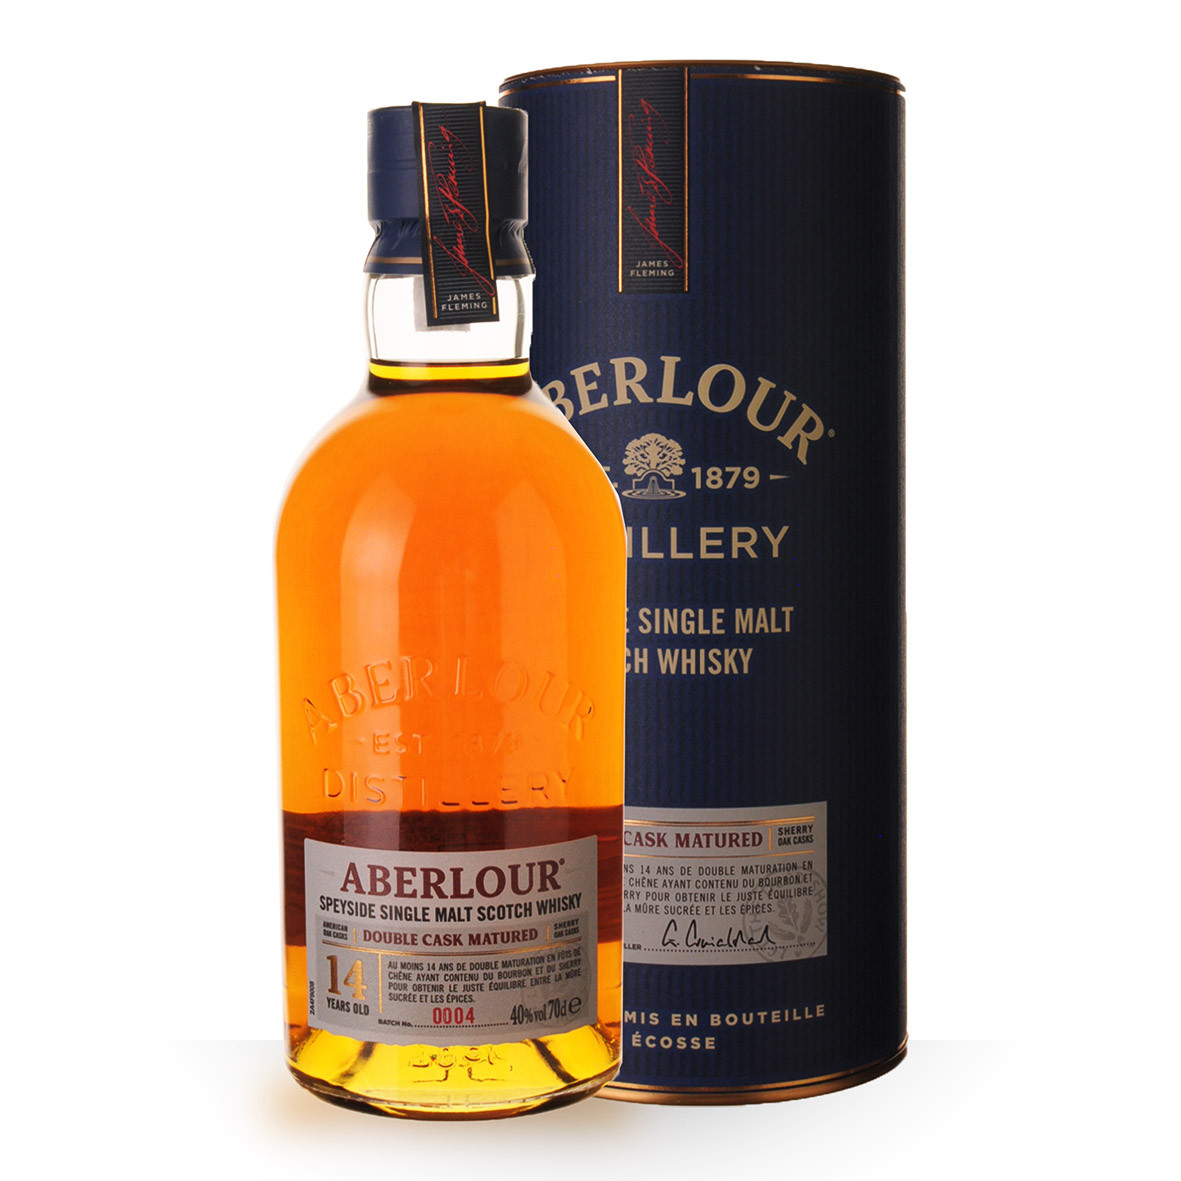 Achat de Whisky Aberlour 14 ans 70cl vendu en Coffret sur notre